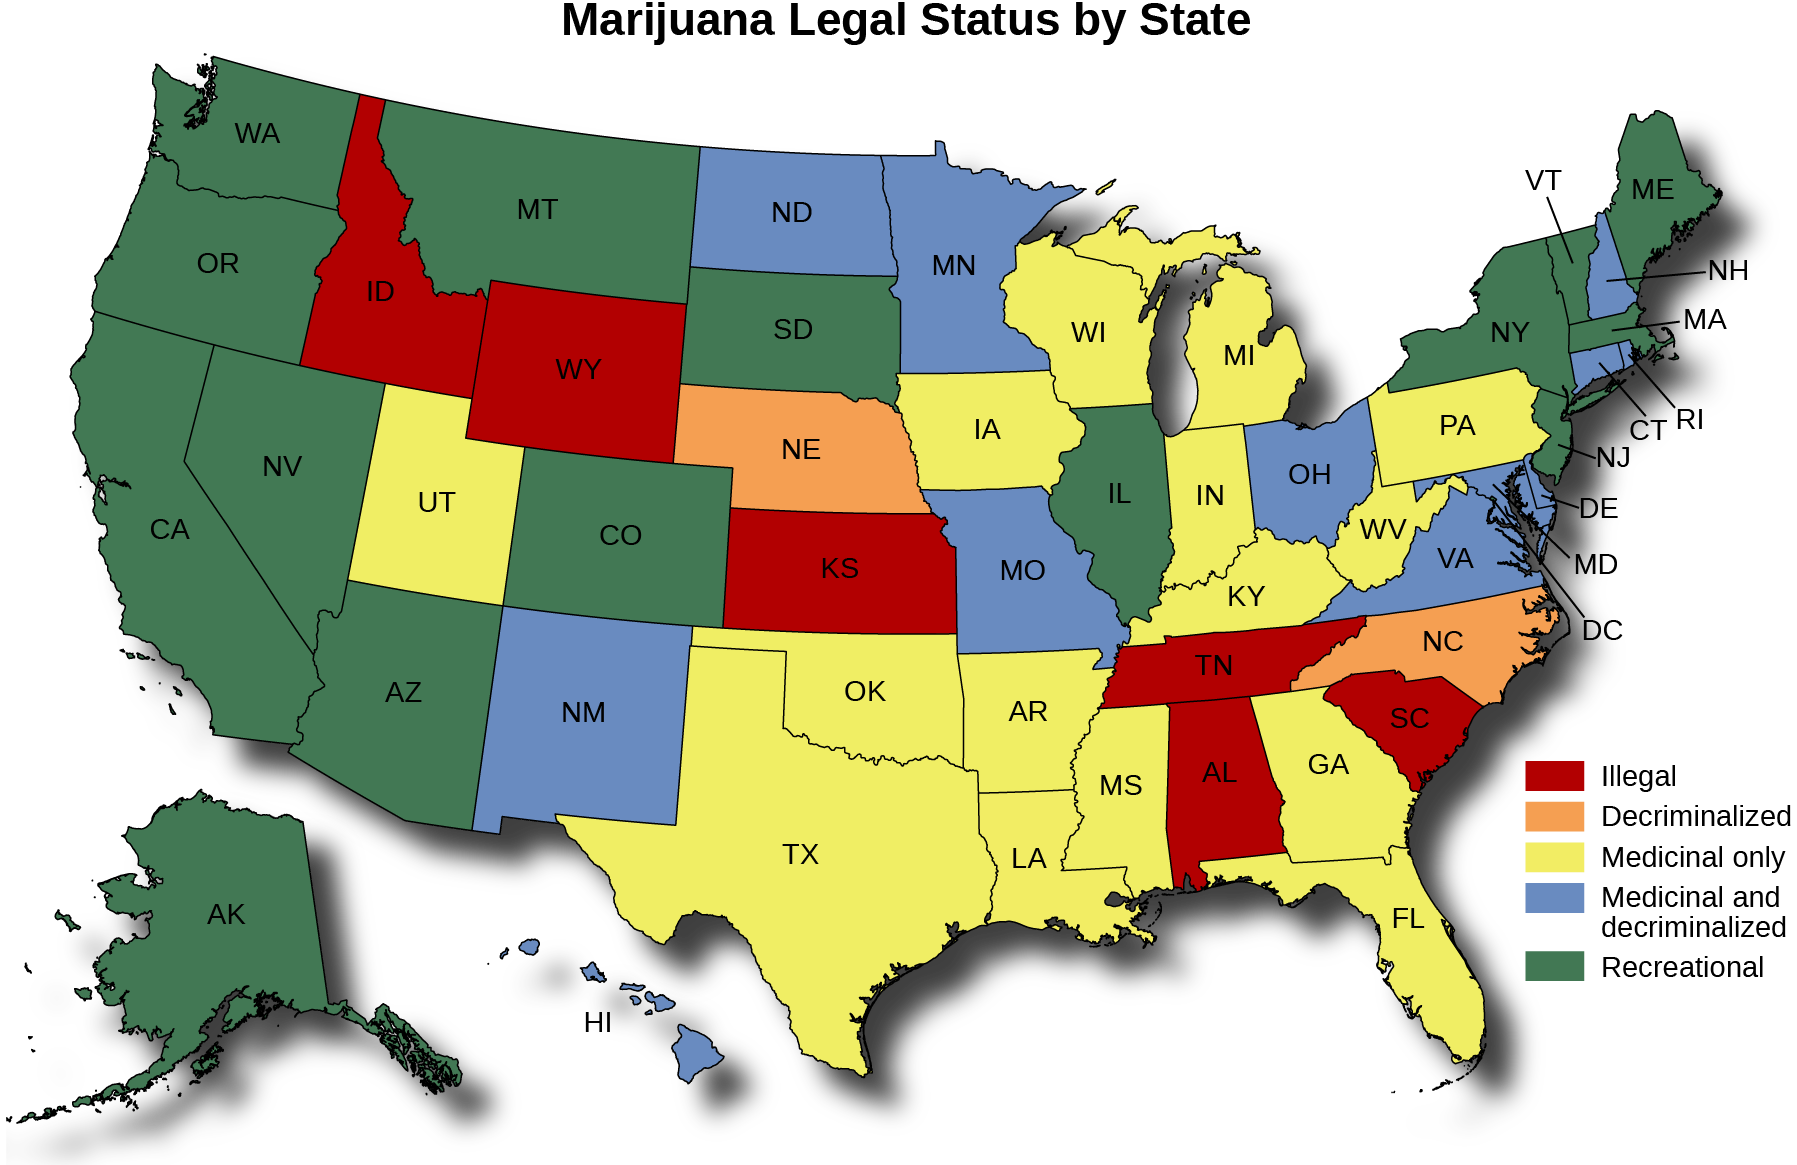 Um mapa dos Estados Unidos intitulado “Situação legal da maconha por estado”. O mapa mostra em quais estados a maconha é ilegal, descriminalizada, somente medicinal, medicinal e descriminalizada e recreativa. A maconha é ilegal em Idaho, Wyoming, Dakota do Sul, Kansas, Texas, Iowa, Wisconsin, Indiana, Kentucky, Tennessee, Alabama, Geórgia, Virgínia e Carolina do Sul. A maconha é descriminalizada em Nebraska, Mississippi e Carolina do Norte. A maconha é medicinal apenas em Montana, Utah, Arizona, Novo México, Dakota do Norte, Oklahoma, Arkansas, Louisiana, Flórida, Virgínia Ocidental, Pensilvânia e Nova Jersey. A maconha é medicinal e descriminalizada em Minnesota, Missouri, Illinois, Ohio, Nova York, Delaware, Maryland, Distrito de Columbia, New Hampshire, Connecticut e Rhode Island. A maconha é recreativa em Washington, Oregon, Califórnia, Nevada, Alasca, Colorado, Michigan, Vermont, Maine e Massachusetts.